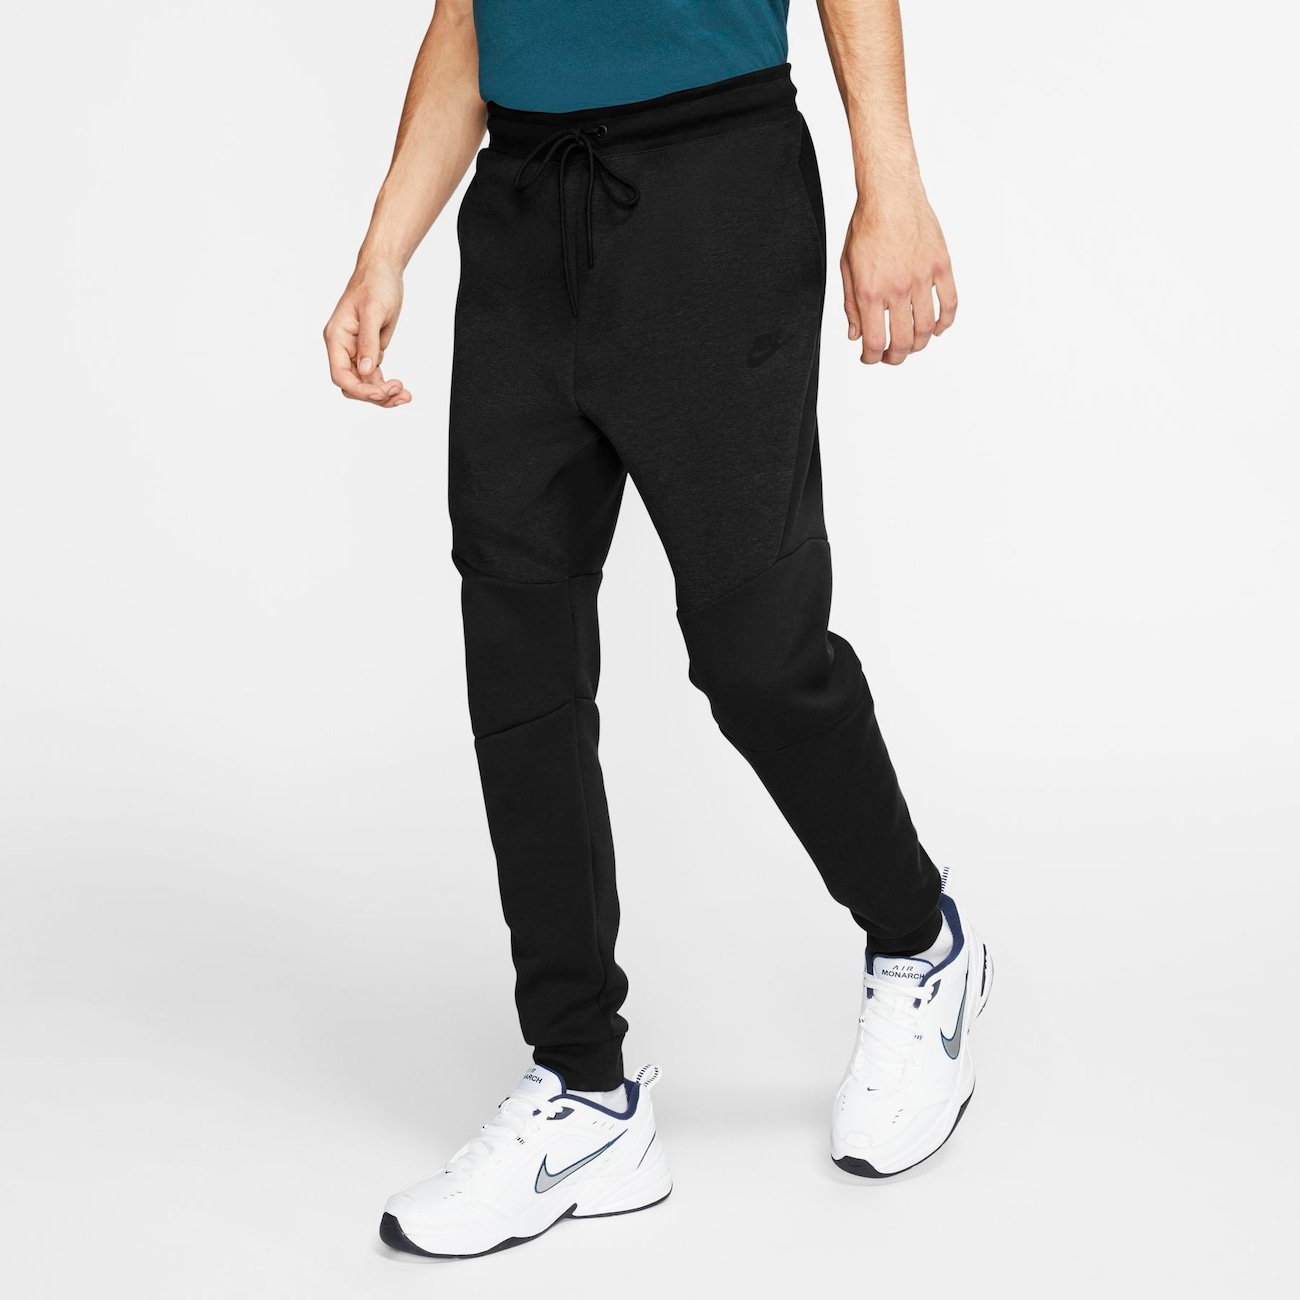 Oferta Nike Sportswear Tech Fleece Jogger Masculina Nike - Do It